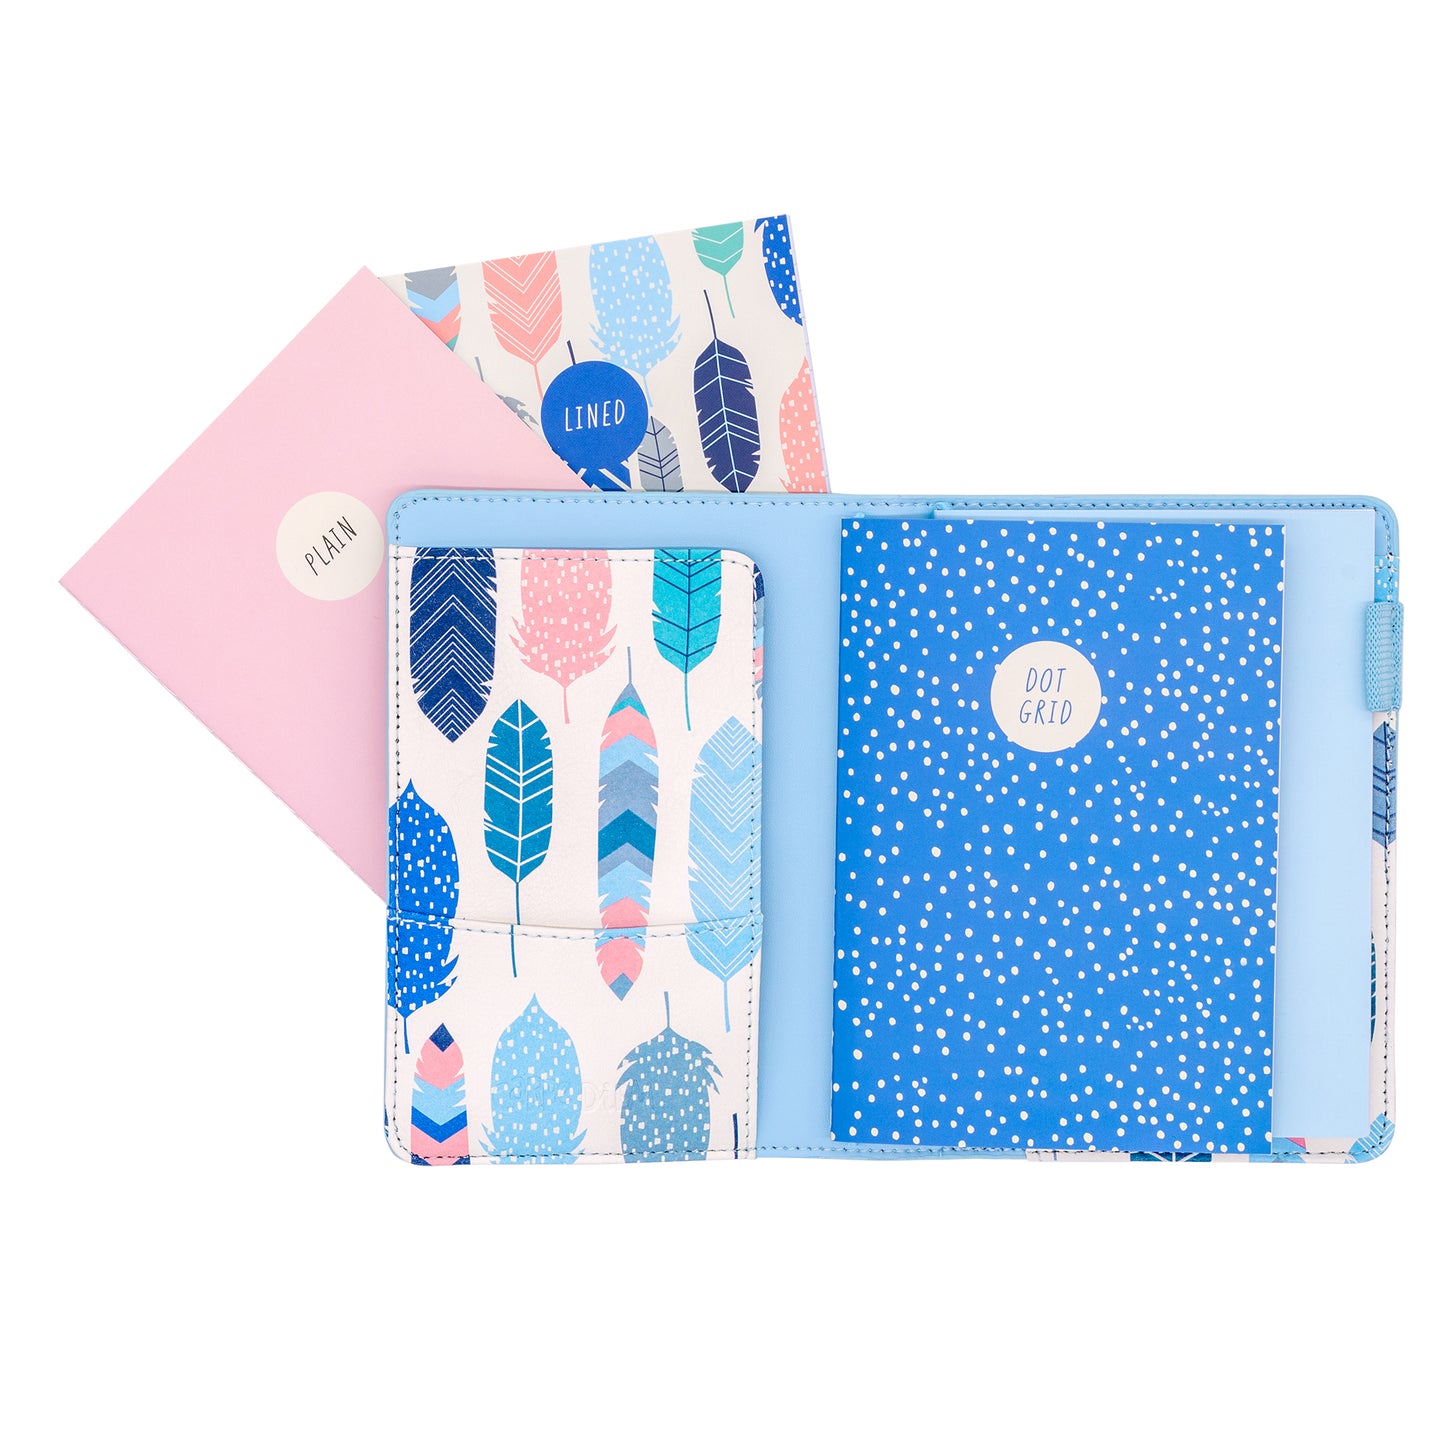 A6 Notebook and Passport Holder - Sky Blue